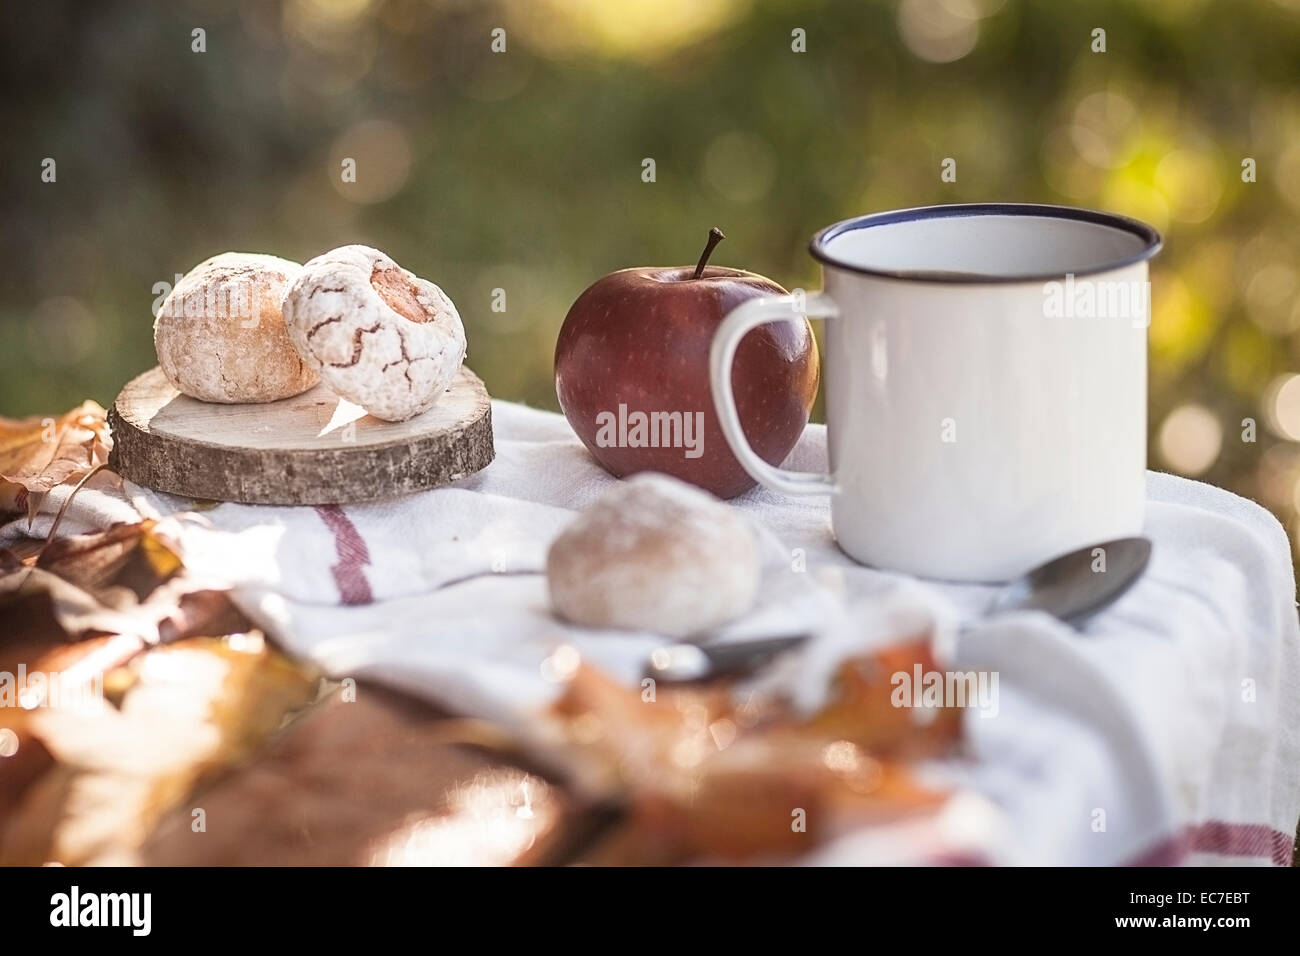 Kaffee, Apfel, italienischen Gebäck und Herbstlaub auf Holzbank Stockfoto